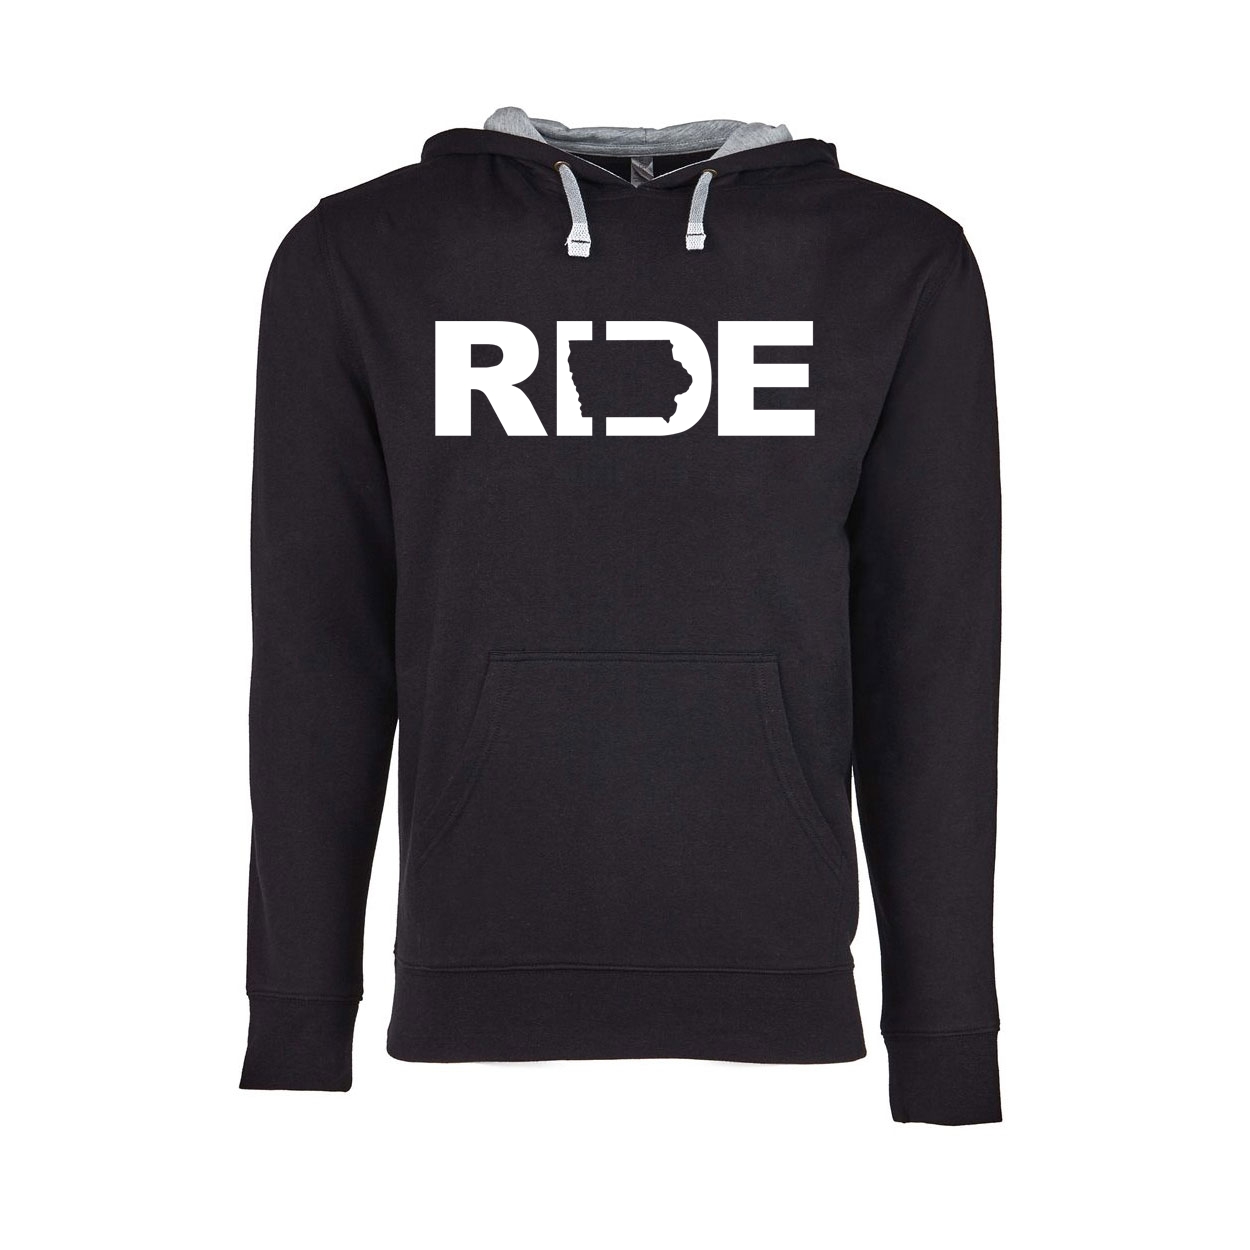 Ride Iowa Classic Lightweight Sweatshirt Black/Heather Gray (White Logo)